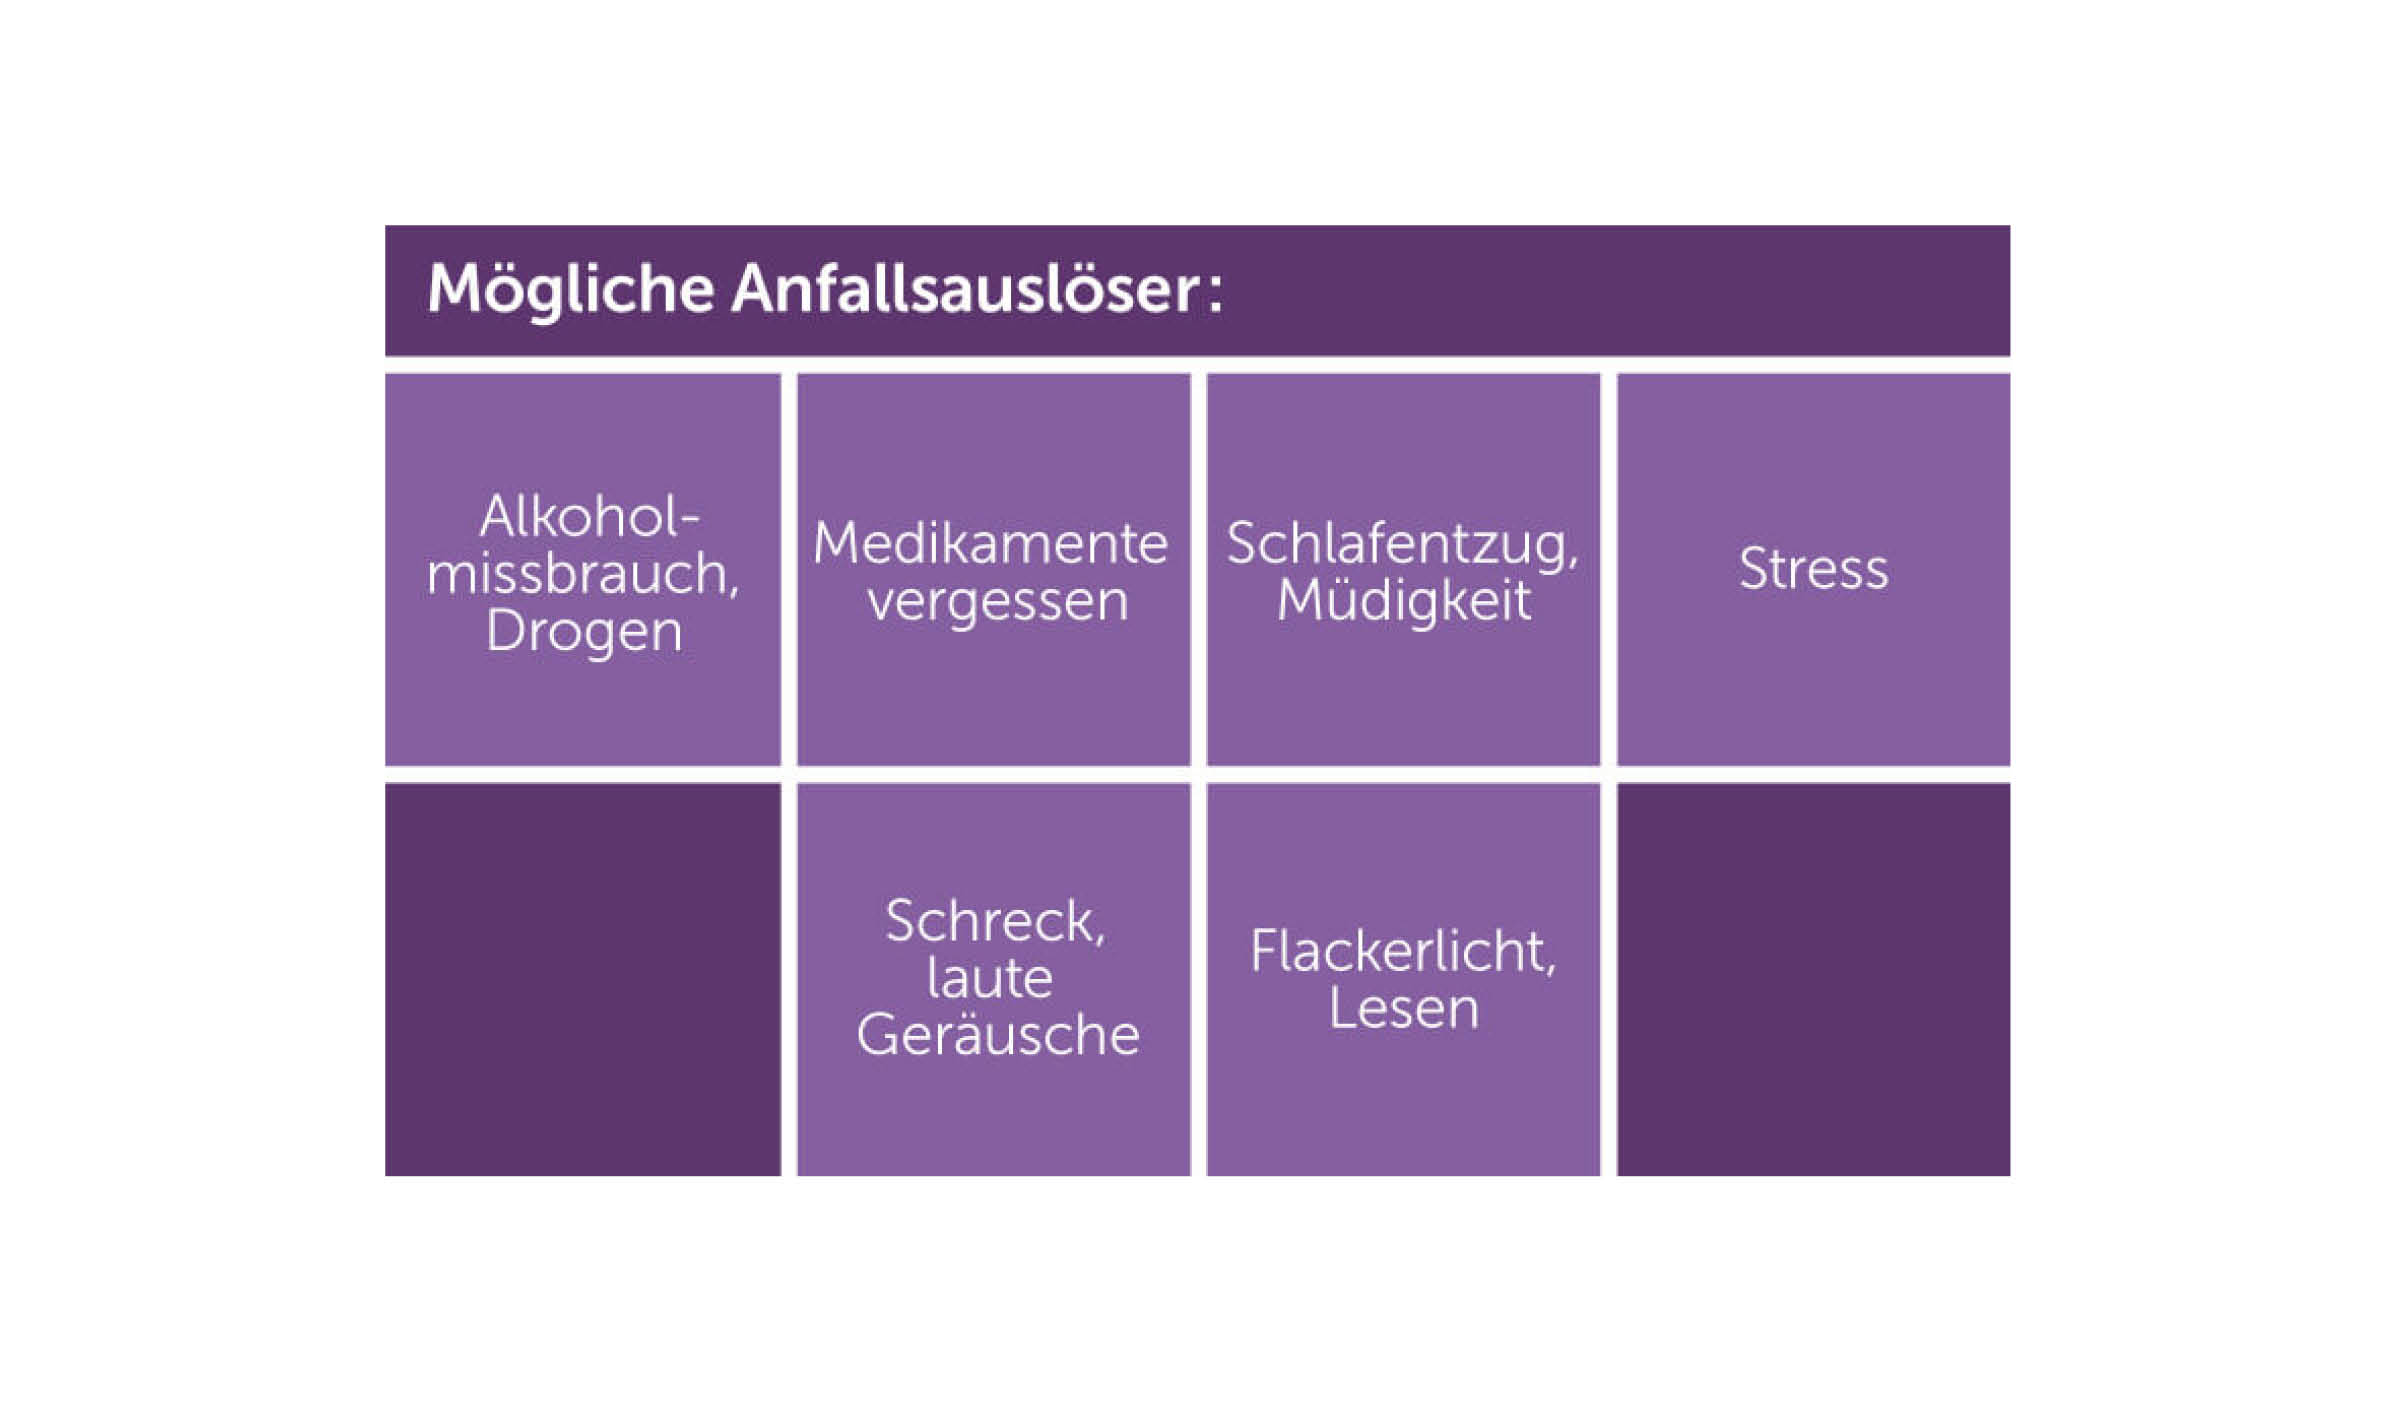 Übersicht über verschiedene Anfallsauslöser bei Epilepsie